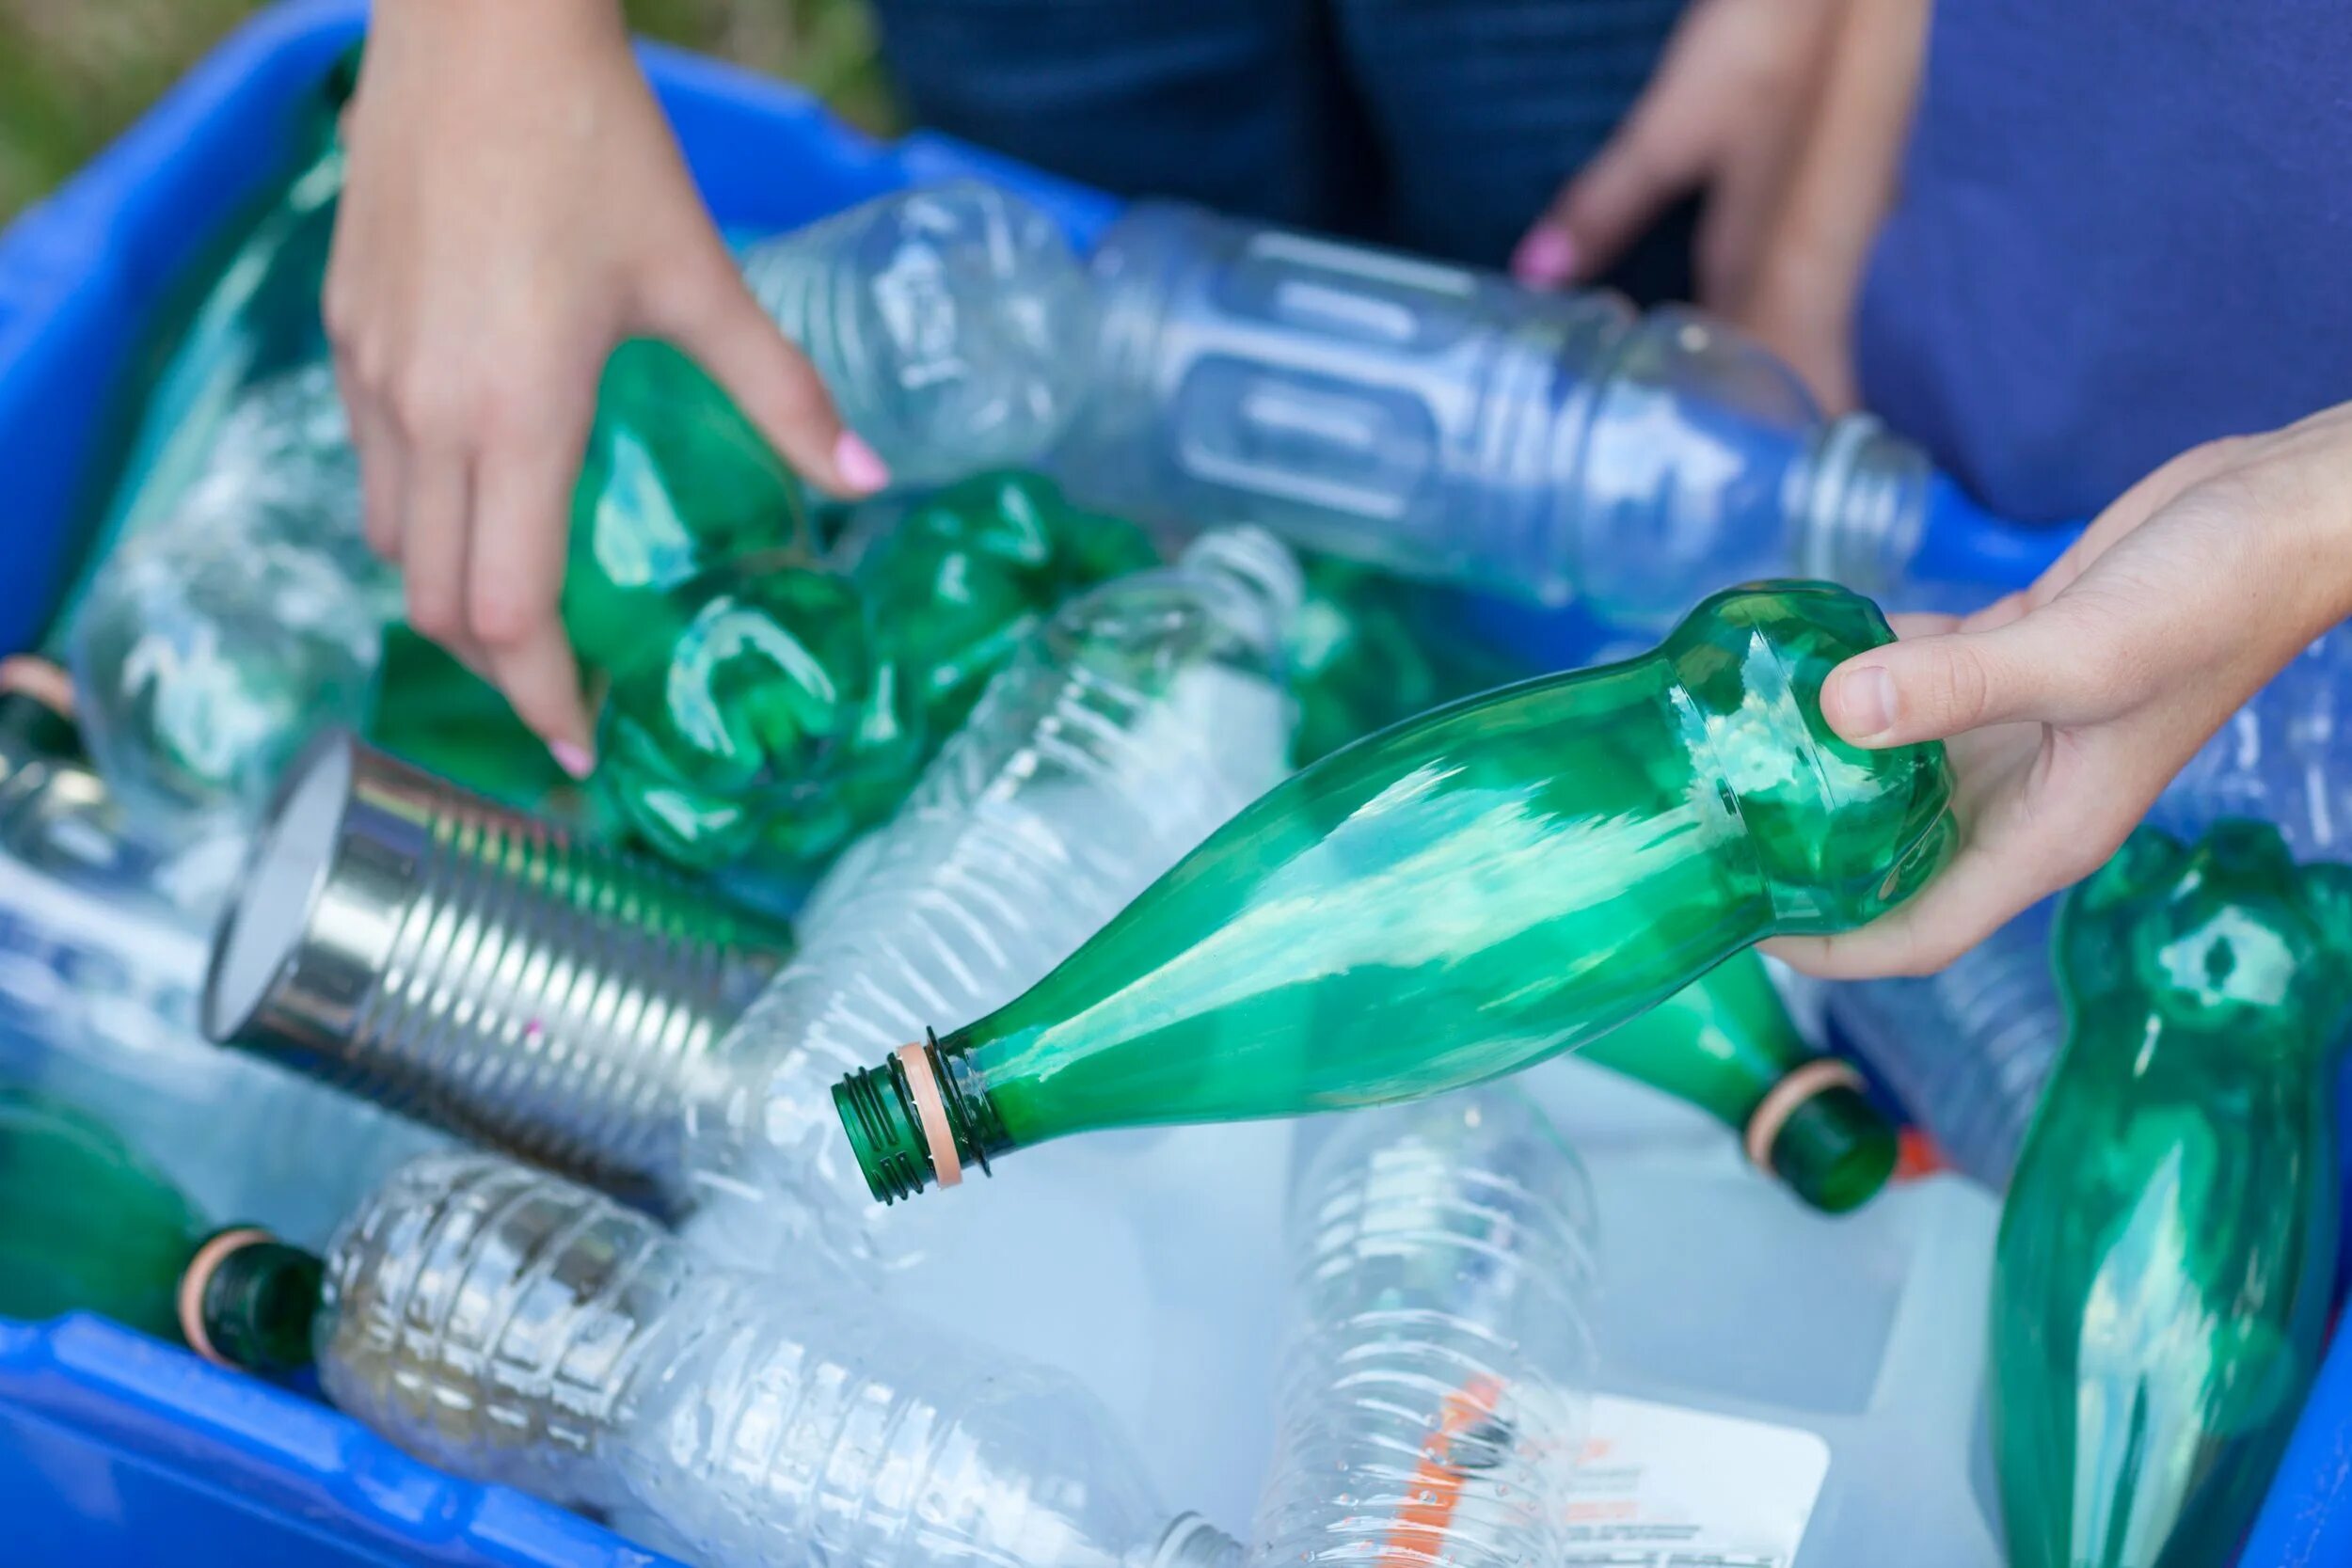 Где сдать пластиковые бутылки в москве. Пластиковая бутылка. Пустая пластиковая бутылка. Утилизация пластиковых бутылок. Переработка пластиковых бутылок.